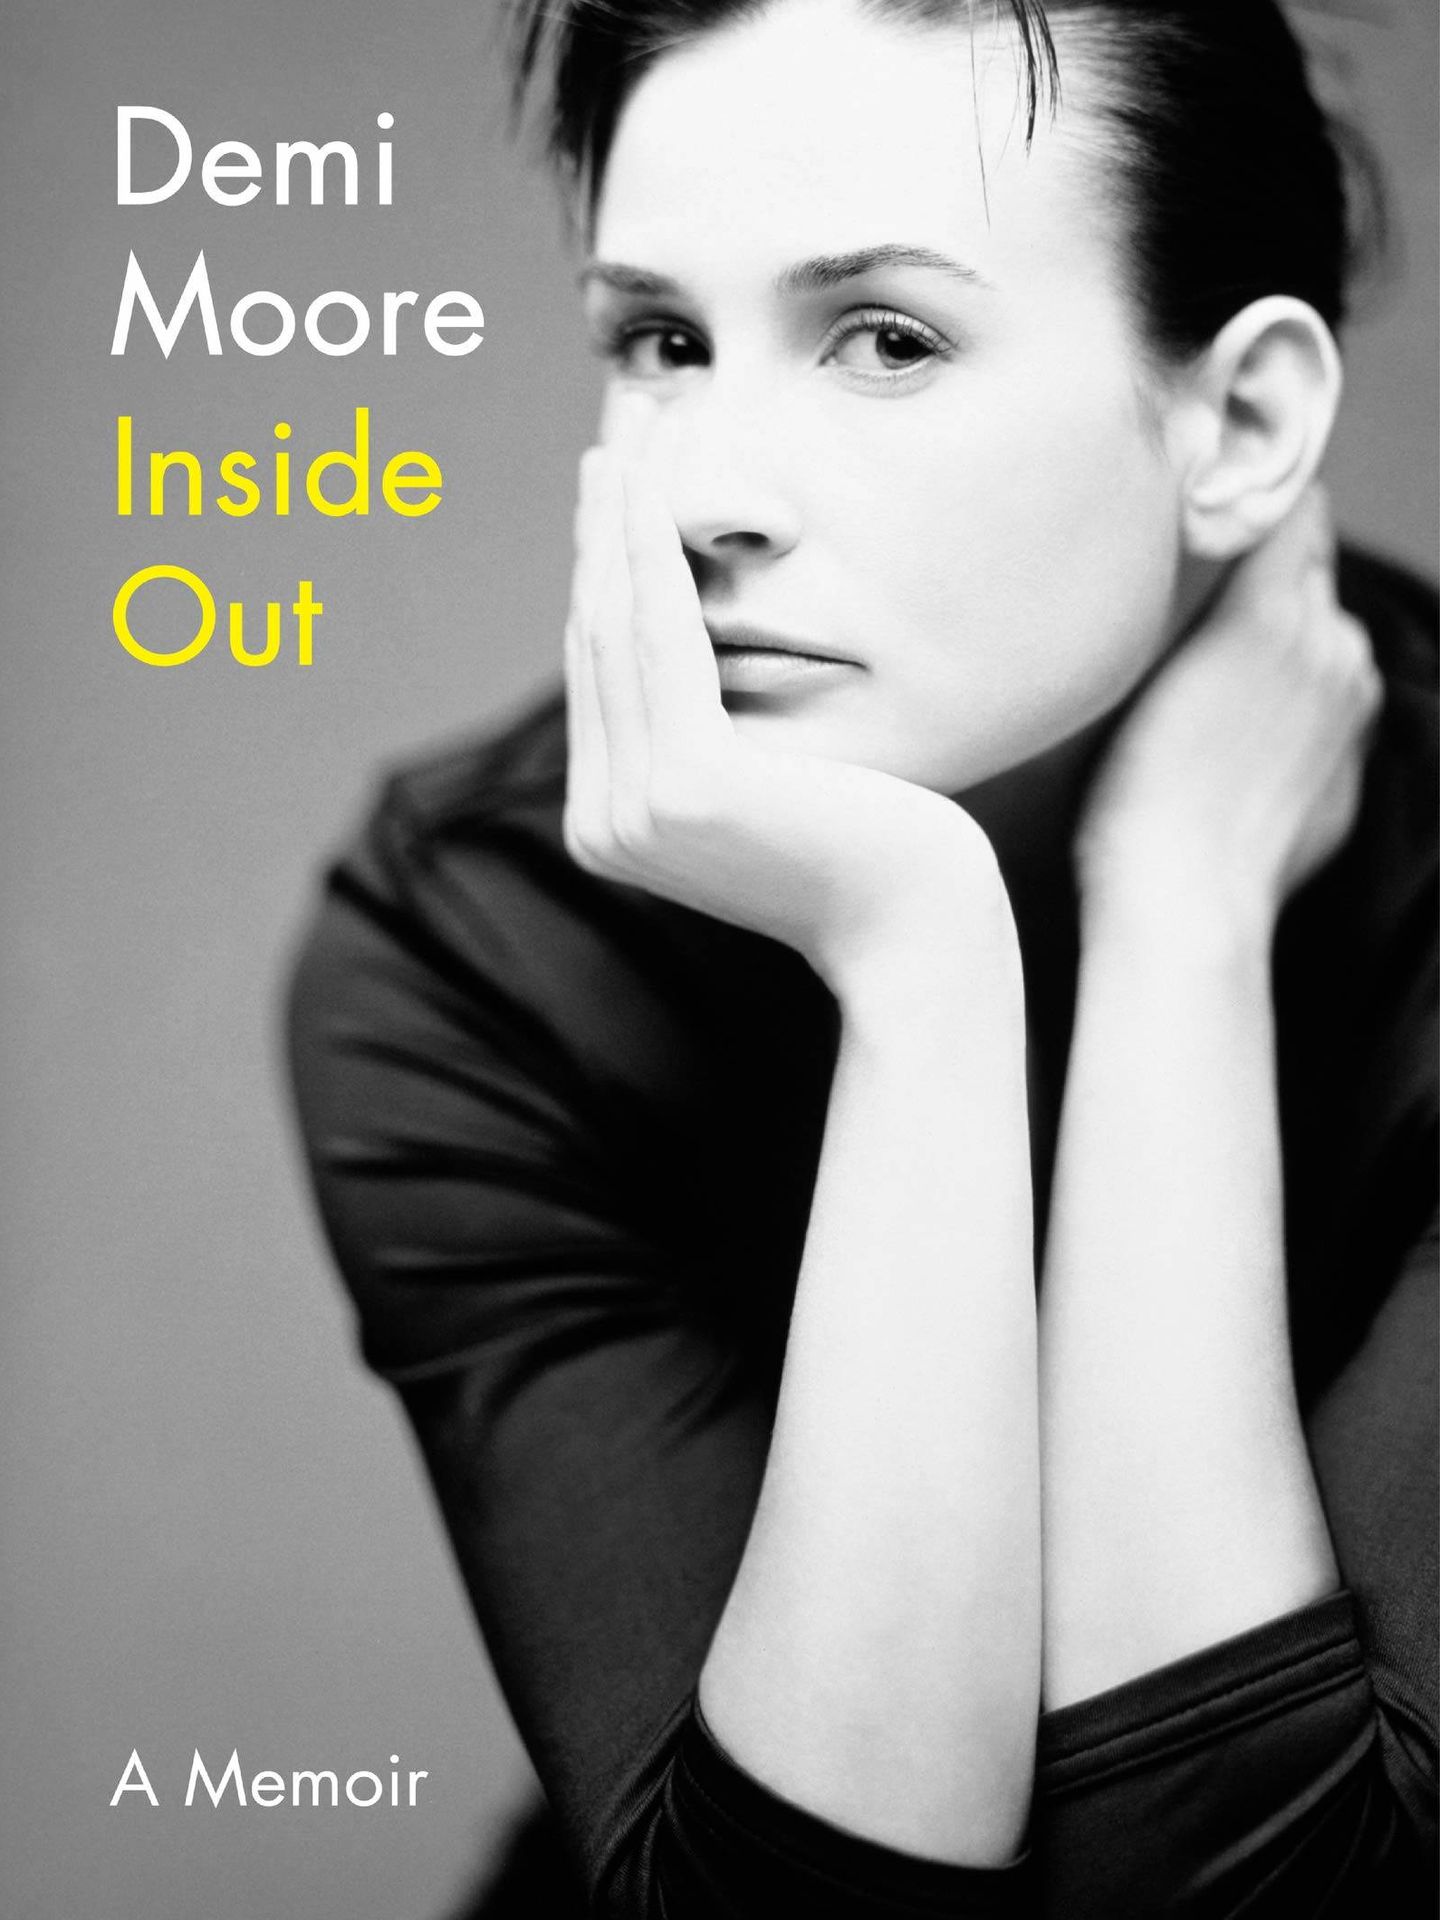 La portada de la autobiografía de Demi Moore.